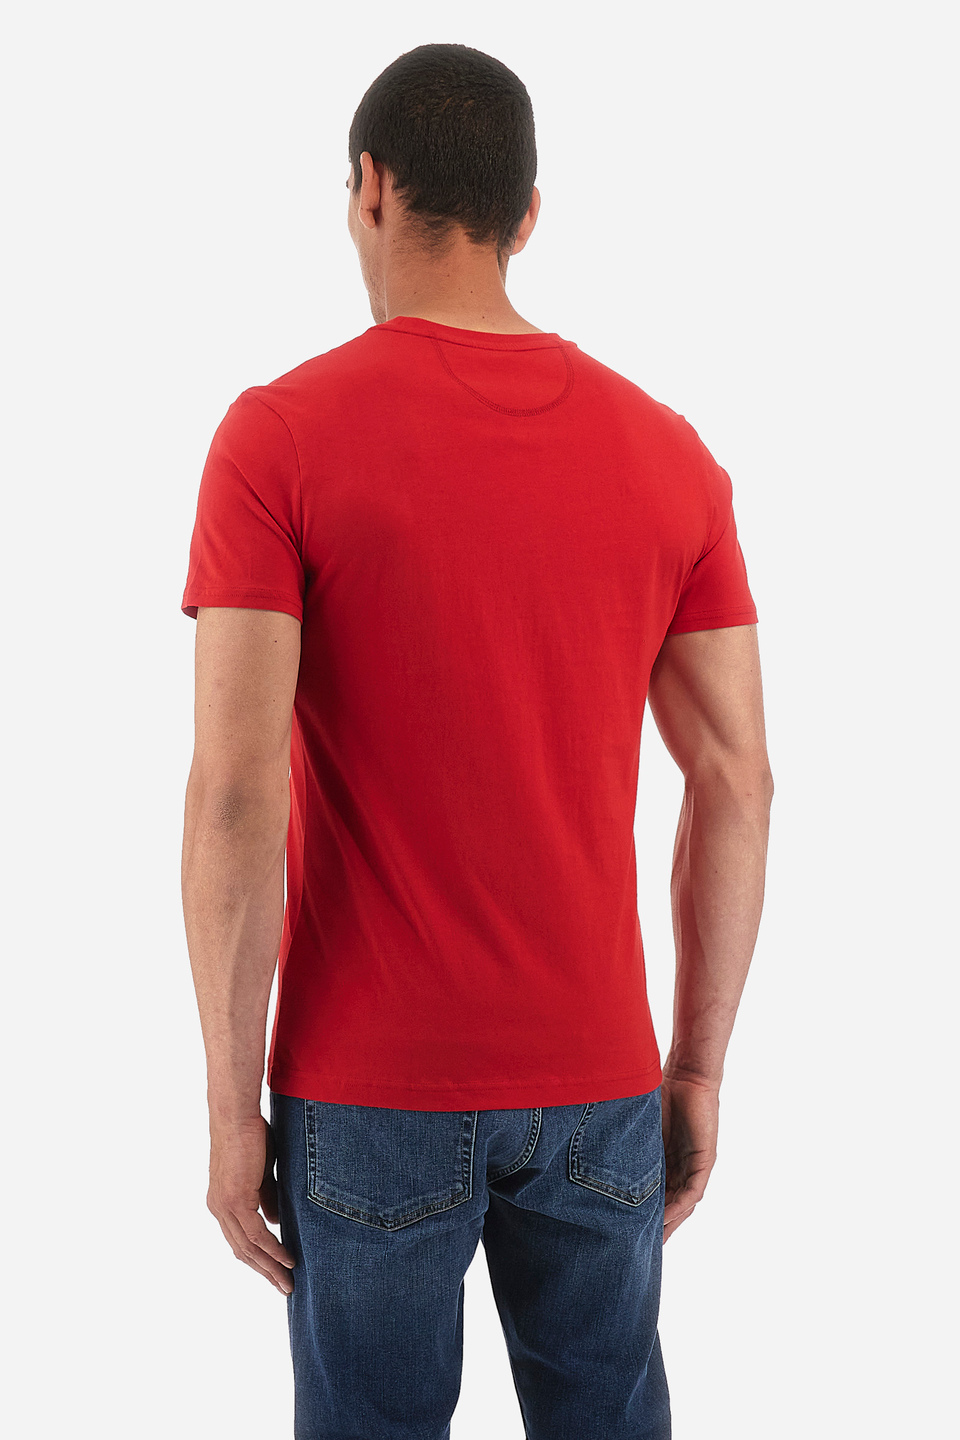 Herren-T-Shirt Regular Fit - Wandie | La Martina - Official Online Shop